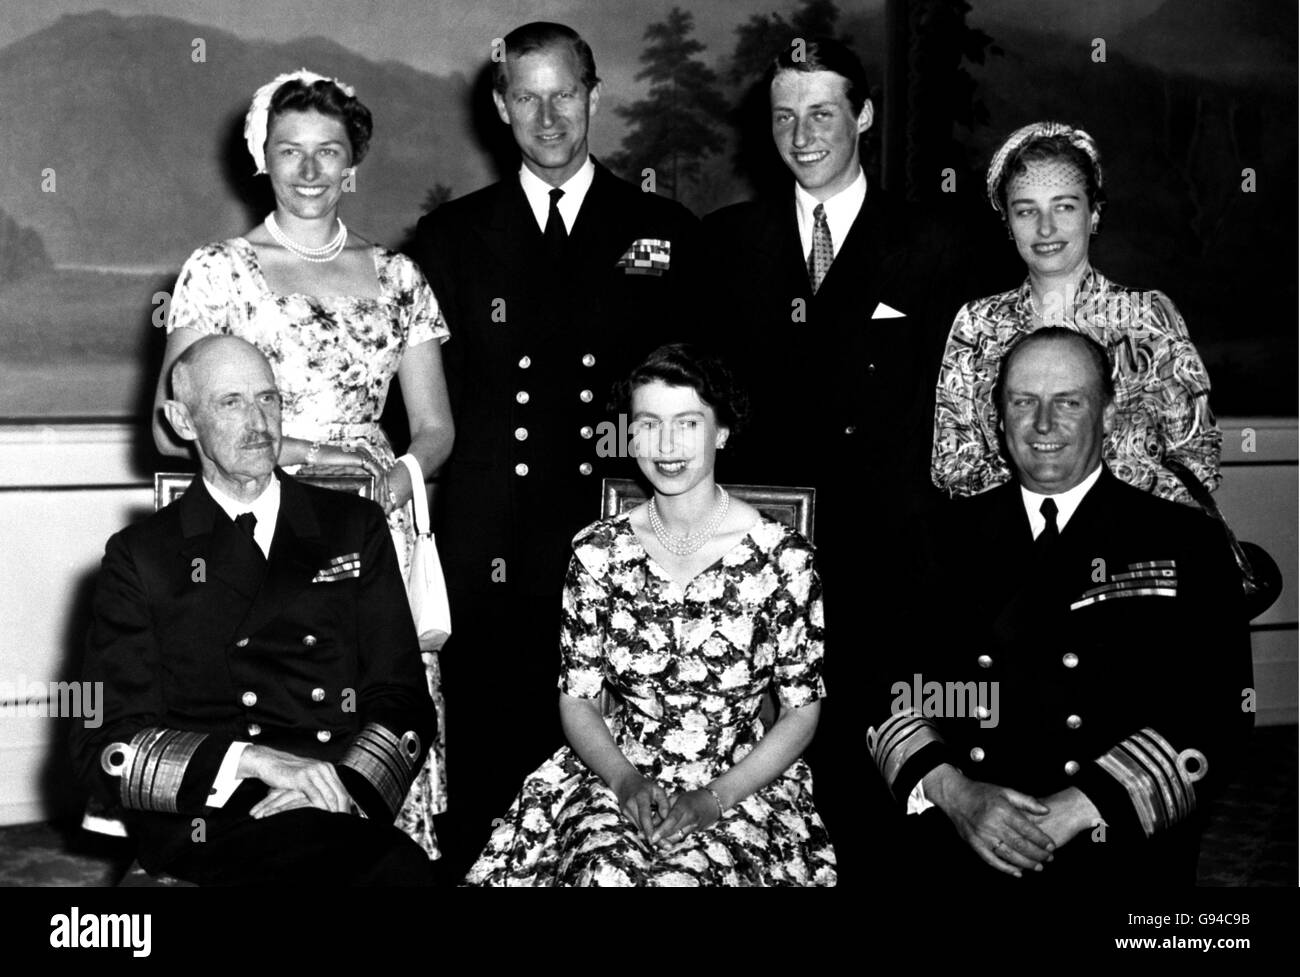 La regina Elisabetta II siede tra il re Haakon (a sinistra) e il principe ereditario Olav di Norvegia. Il Duca di Edimburgo è visto in fila con la principessa Astrid (a sinistra), figlia del principe ereditario di 23 anni, e un cugino della regina britannica; il principe Harald, figlio del principe ereditario; e la principessa Ragnhild (Mrs Lorentzen), figlia del principe ereditario. Foto Stock